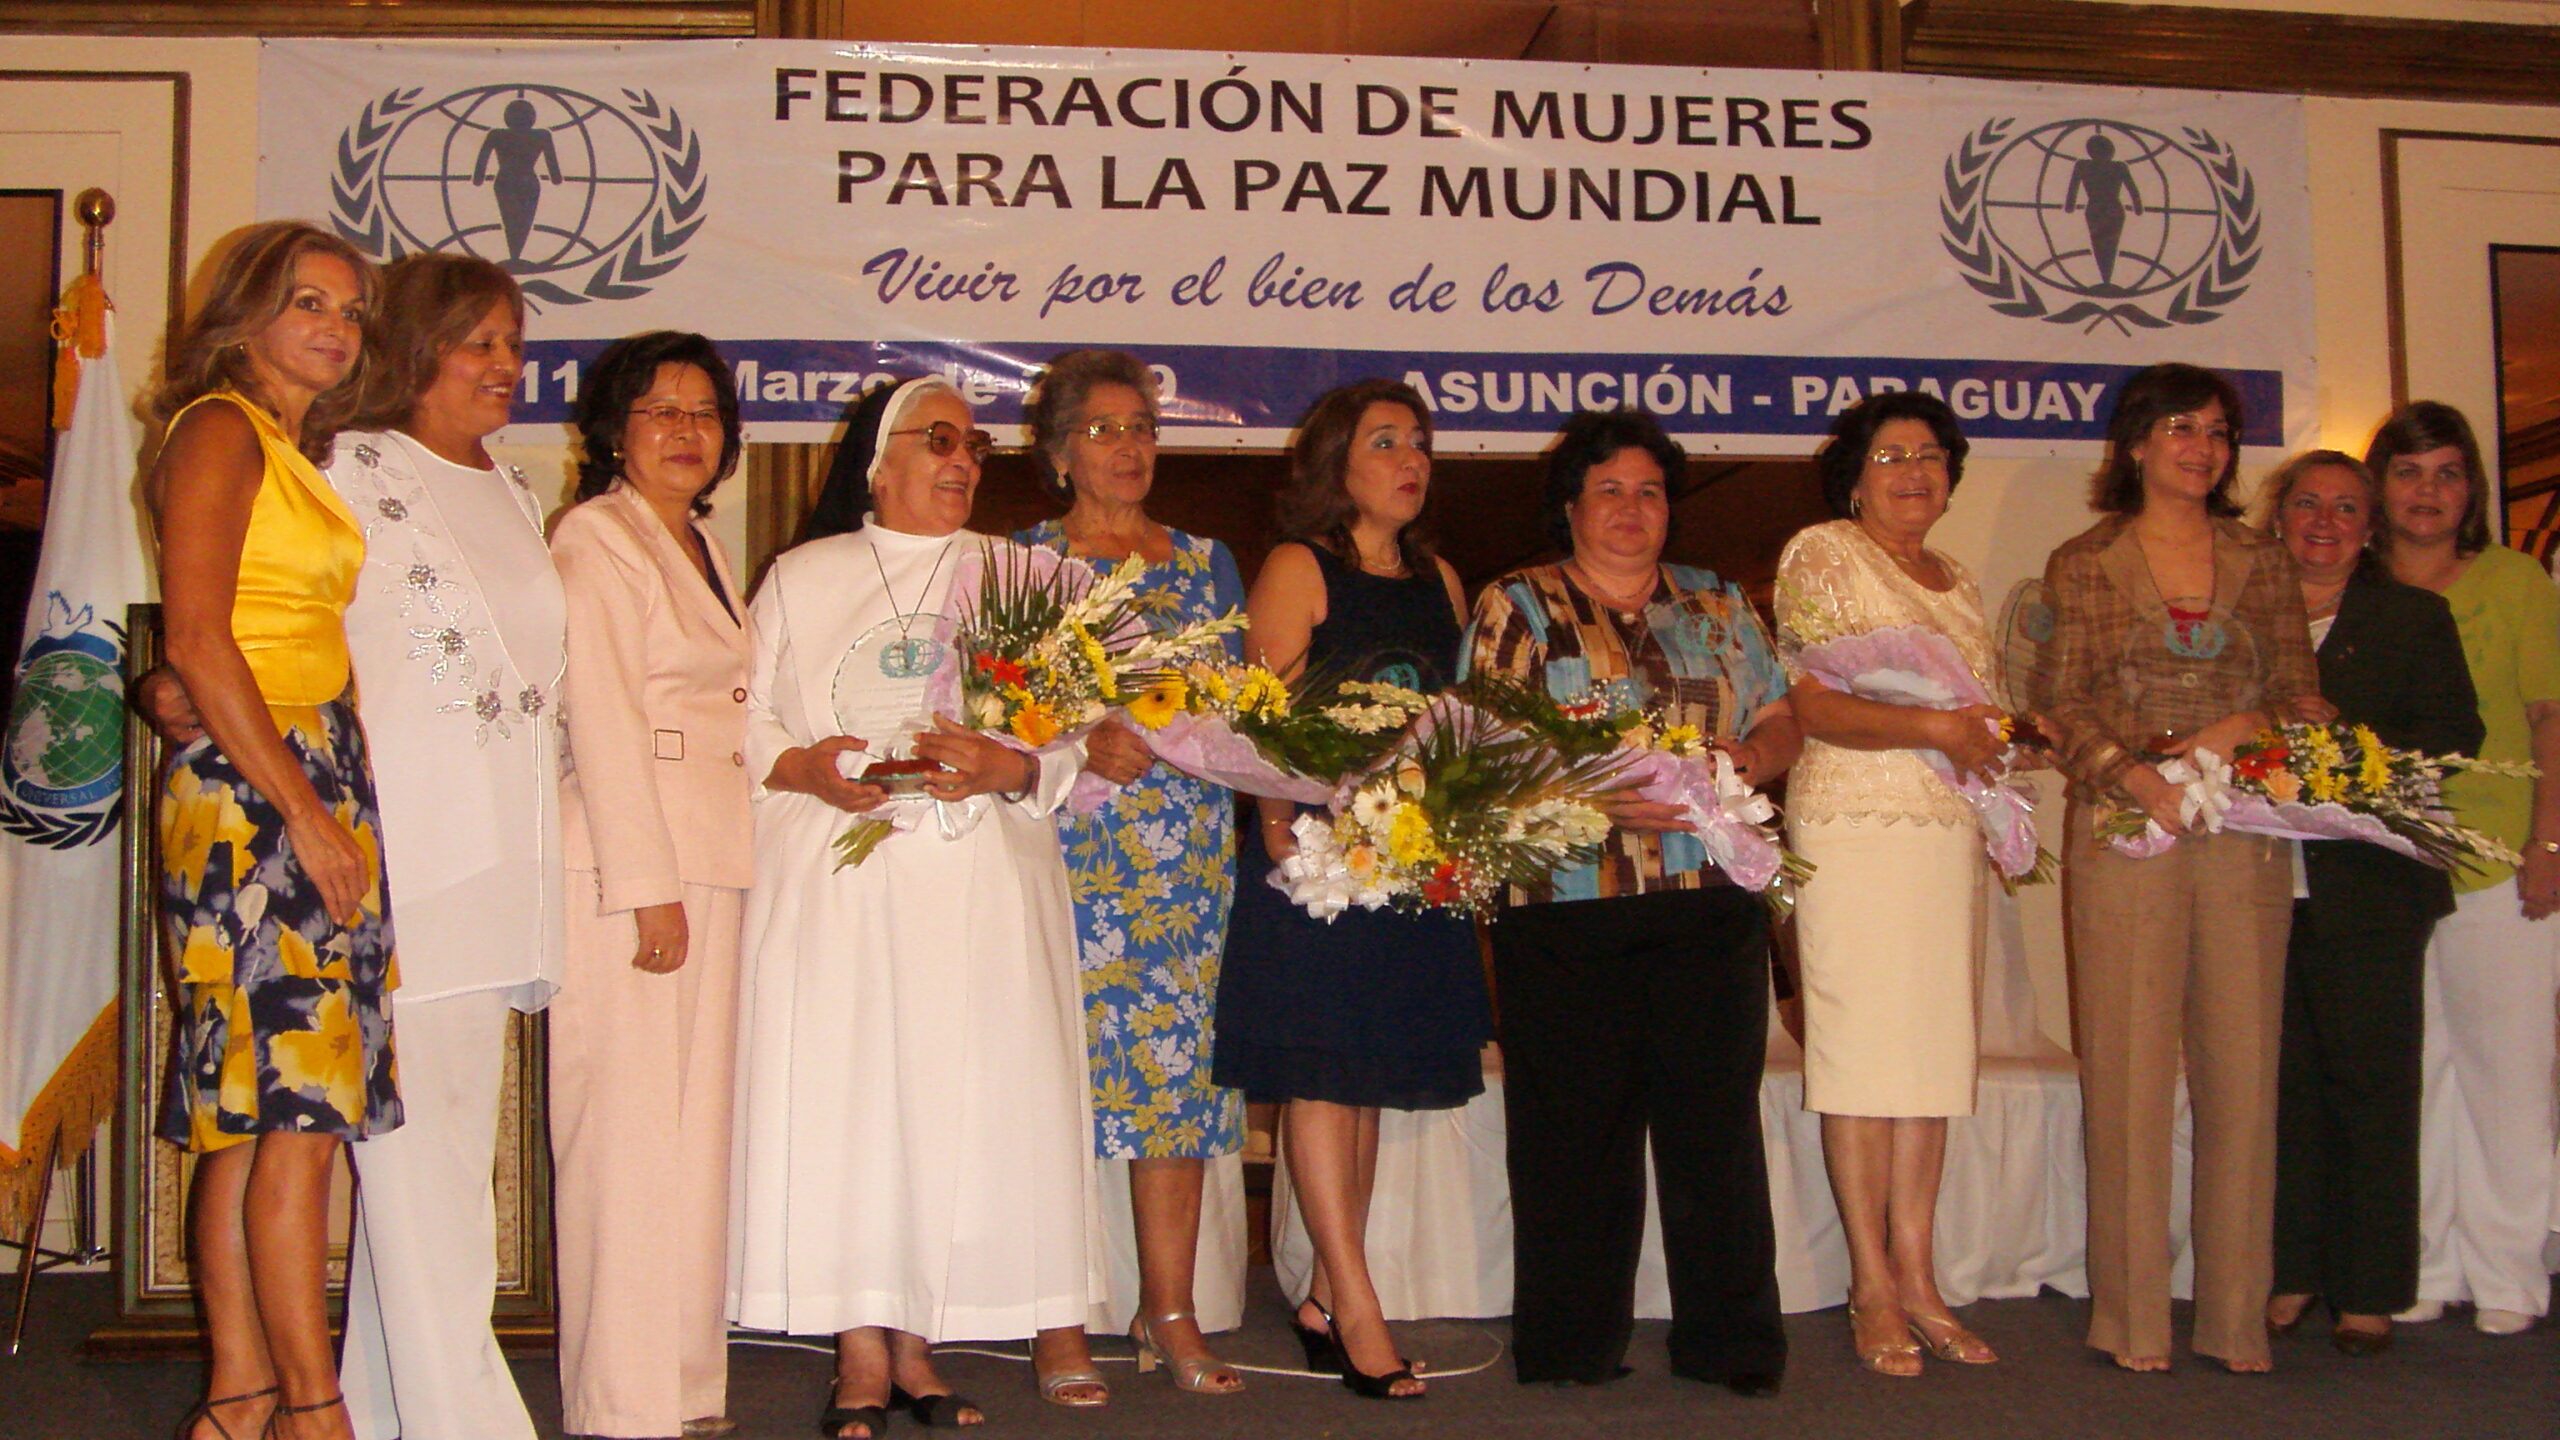 A group of women posing for a picture at a Primera Edición ceremony, showcasing their commitment to Vivir por el bien de los Demás.